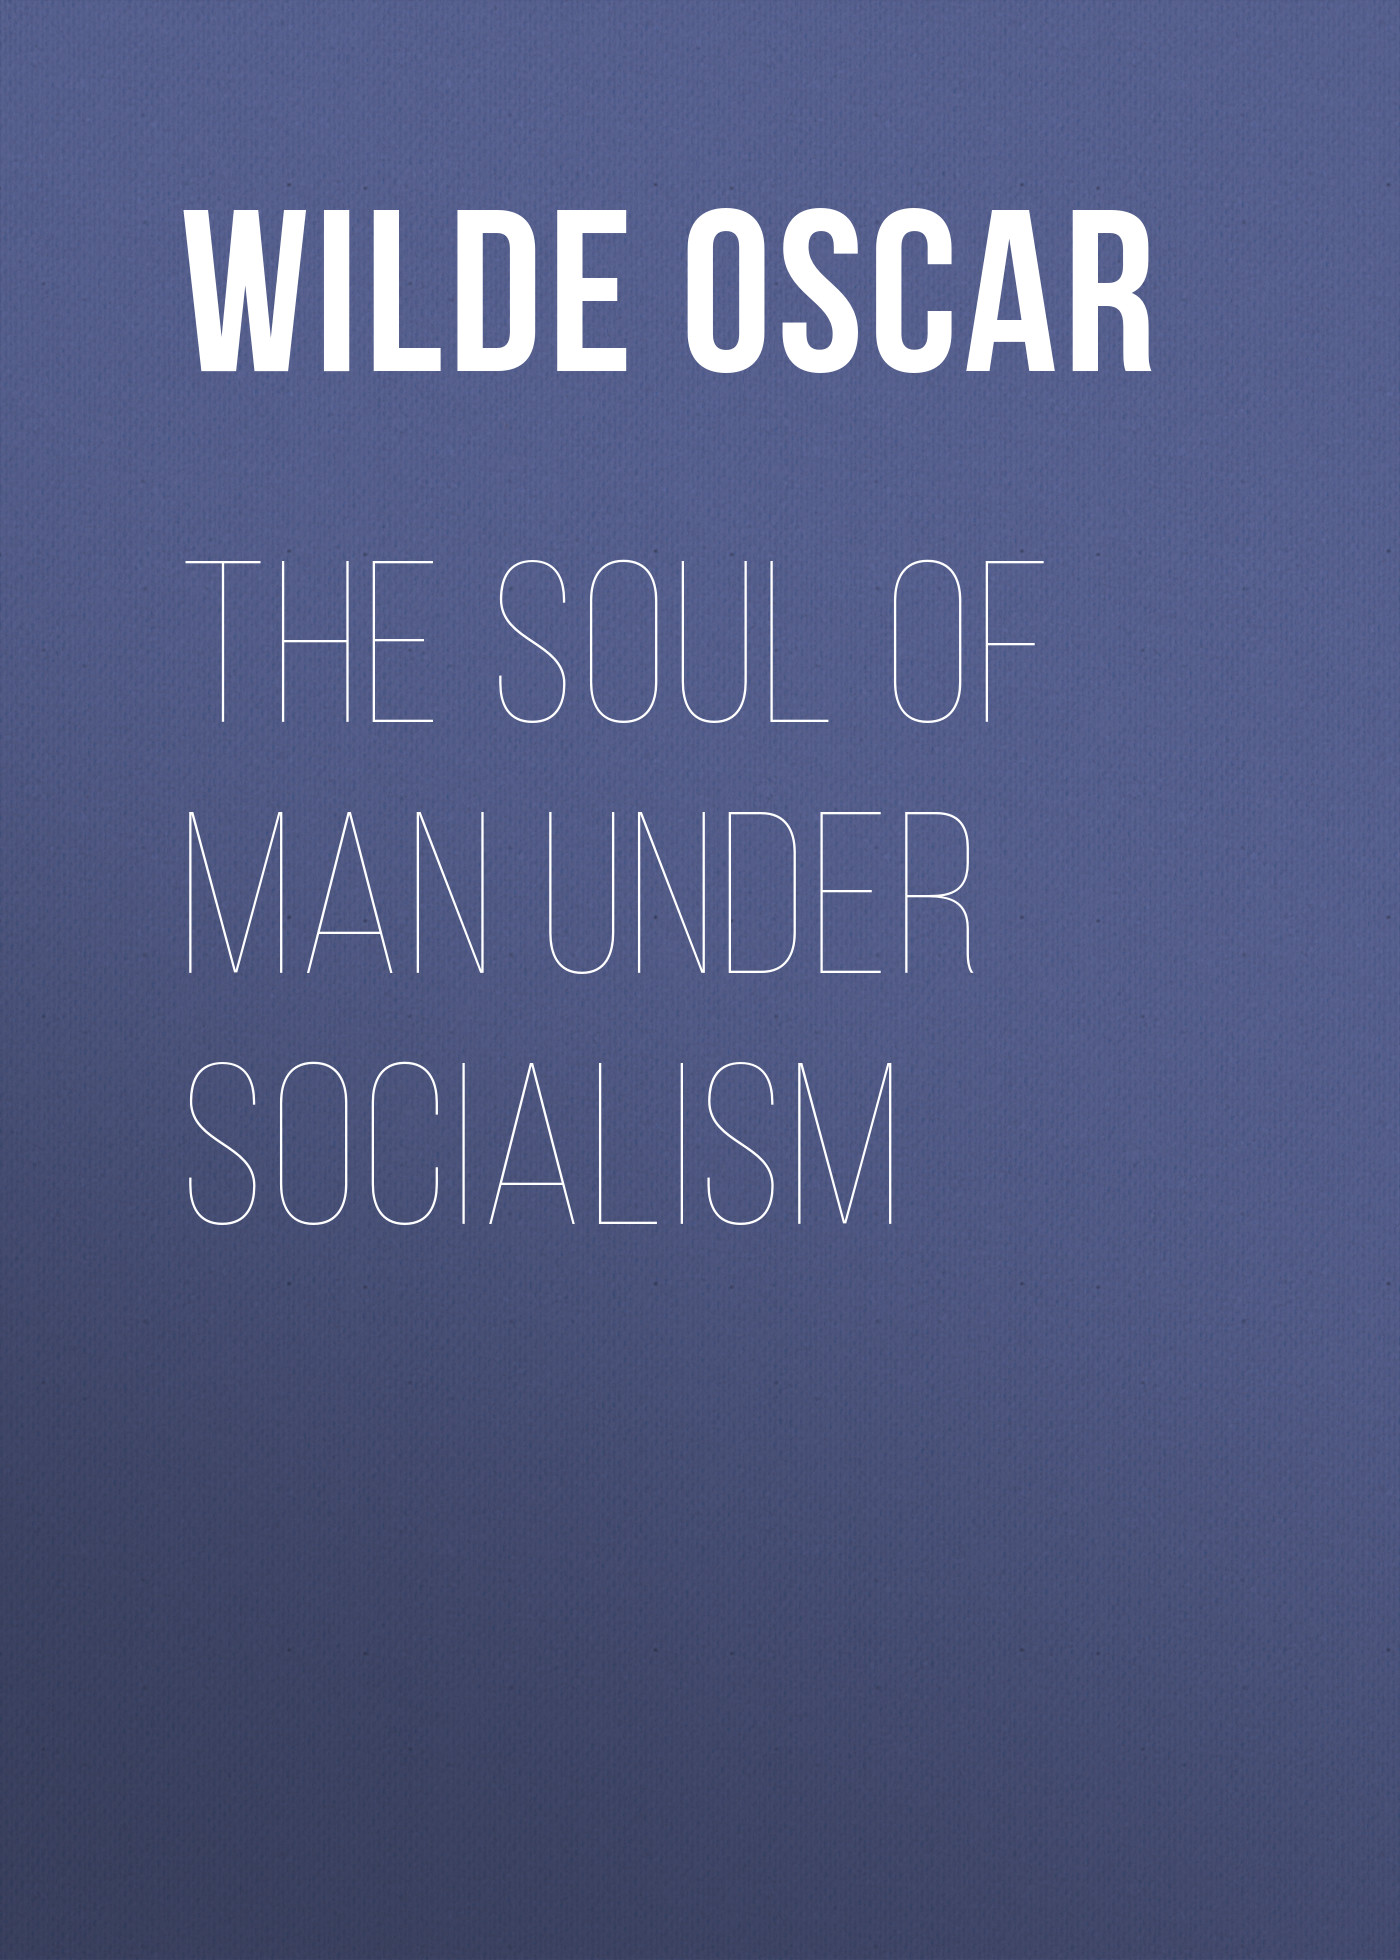 Книга The Soul of Man under Socialism из серии , созданная Oscar Wilde, может относится к жанру История, Литература 19 века, Зарубежная классика. Стоимость электронной книги The Soul of Man under Socialism с идентификатором 25559508 составляет 0 руб.